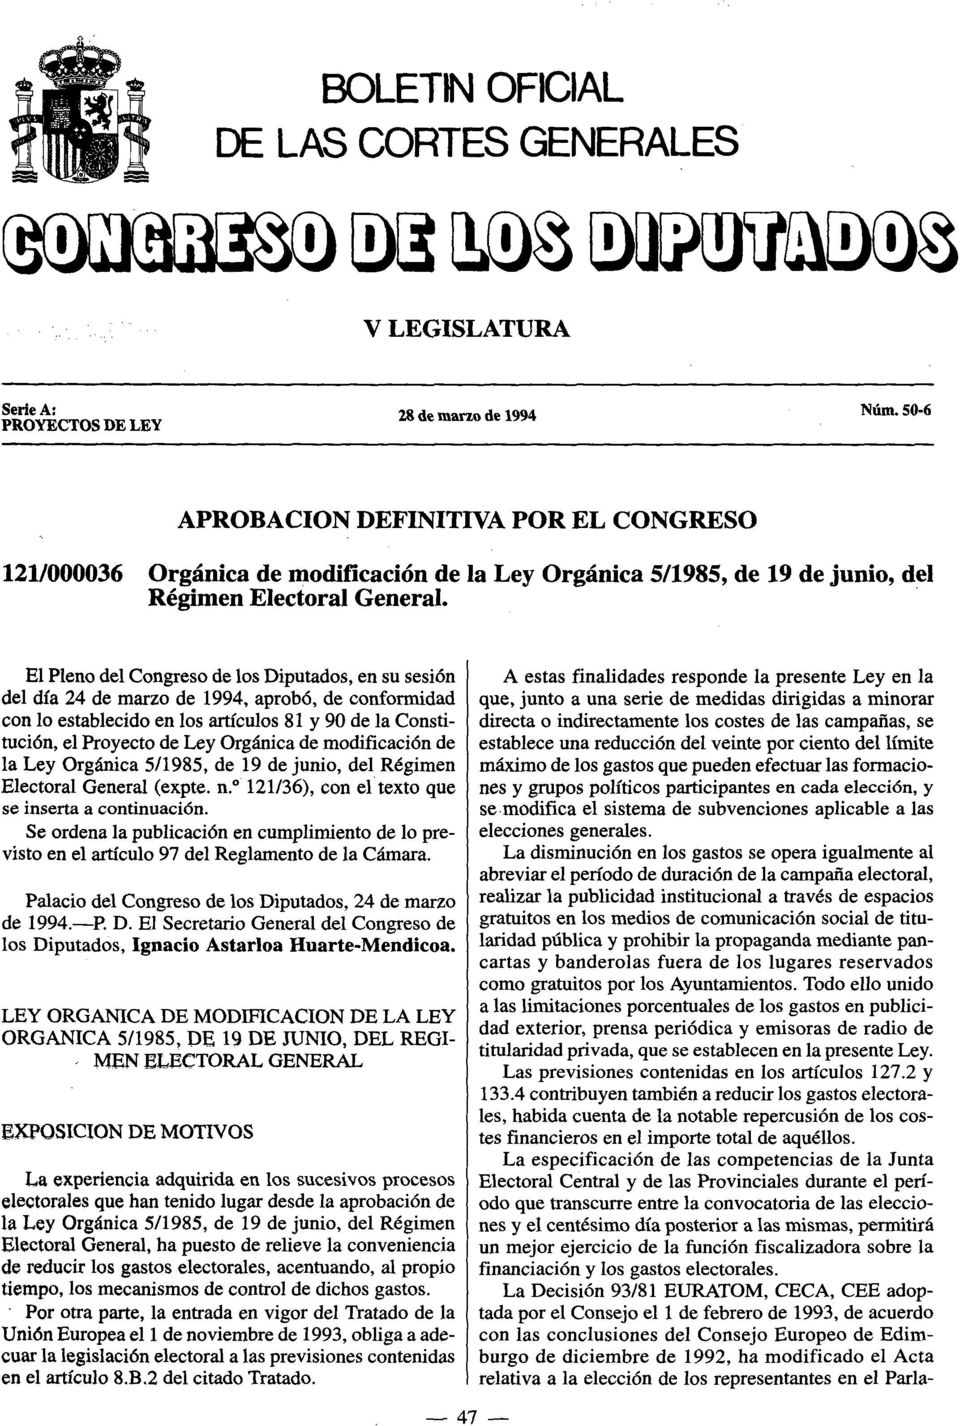 El Pleno del Congreso de los Diputados, en su sesión del día 24 de marzo de 1994, aprobó, de conformidad con lo establecido en los artículos 81 y 90 de la Constitución, el Proyecto de Ley Orgánica de